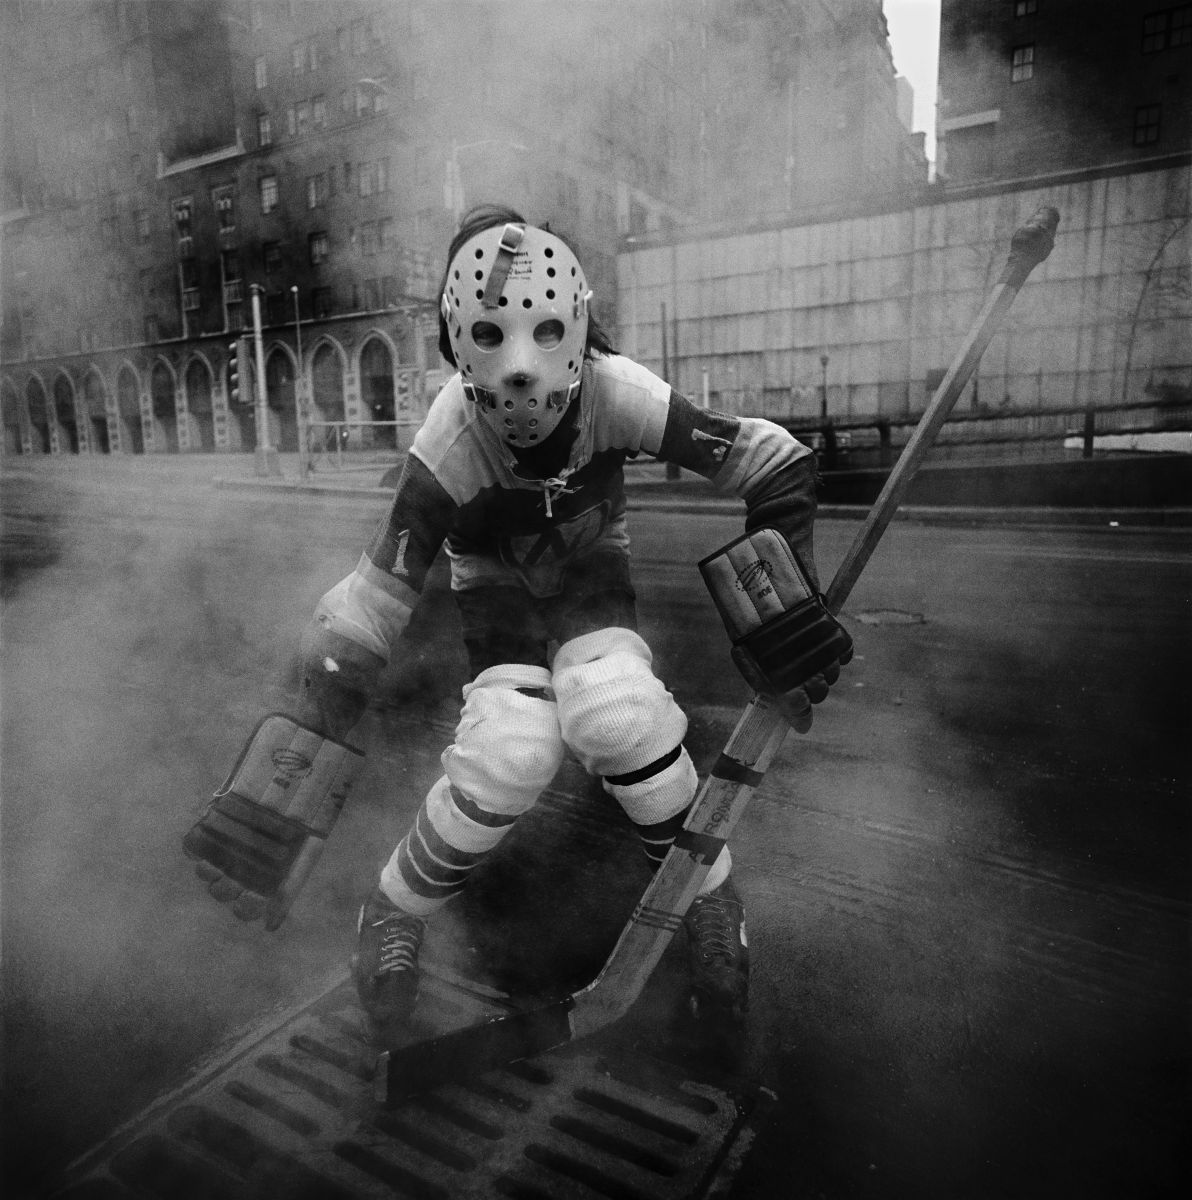 Arthur Tress 'Street Hockey' NY